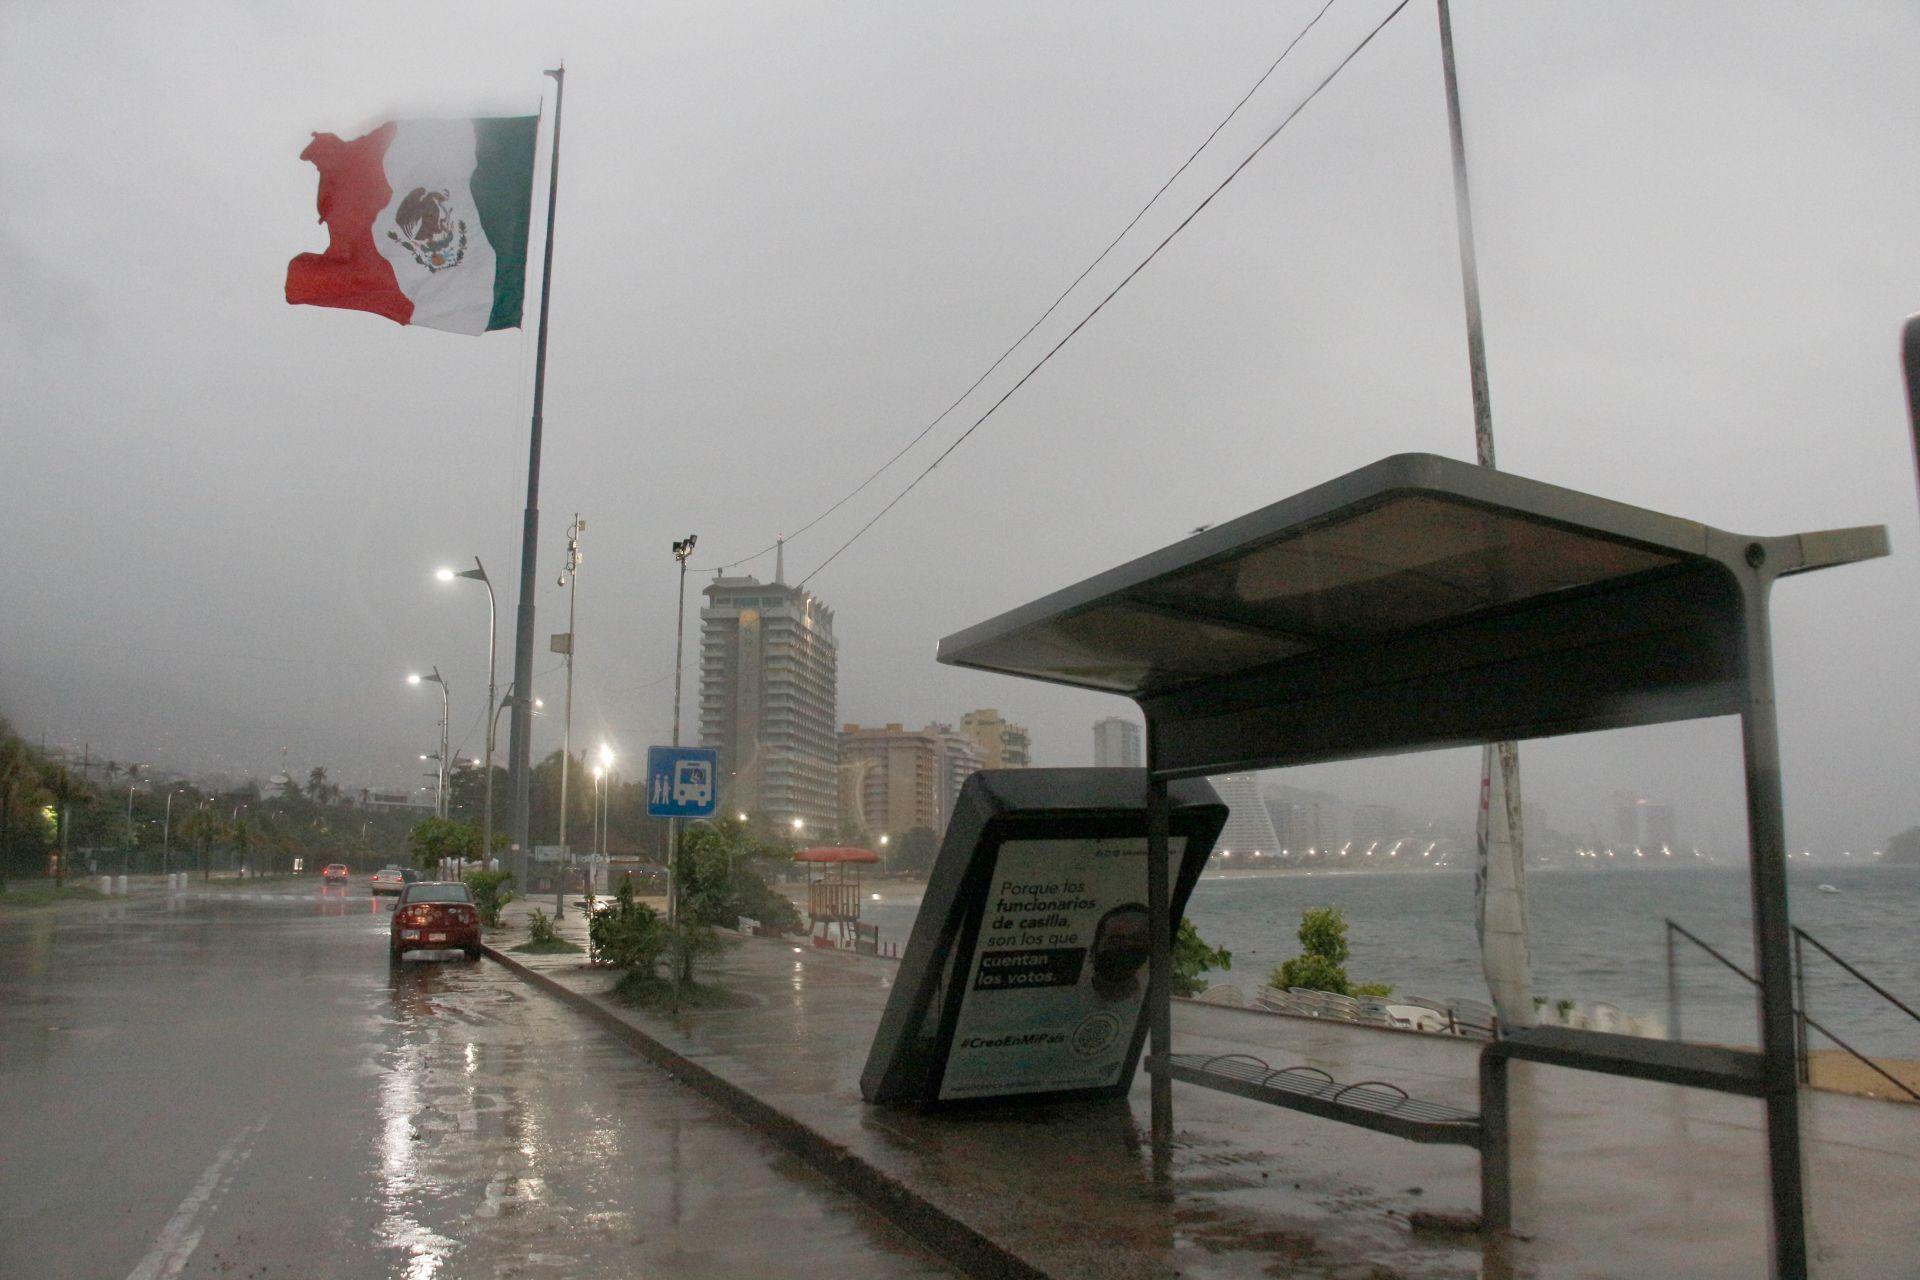 Tormenta tropical ‘Dolores’ toca tierra entre Colima y Michoacán; prevén fuertes lluvias y rachas de viento